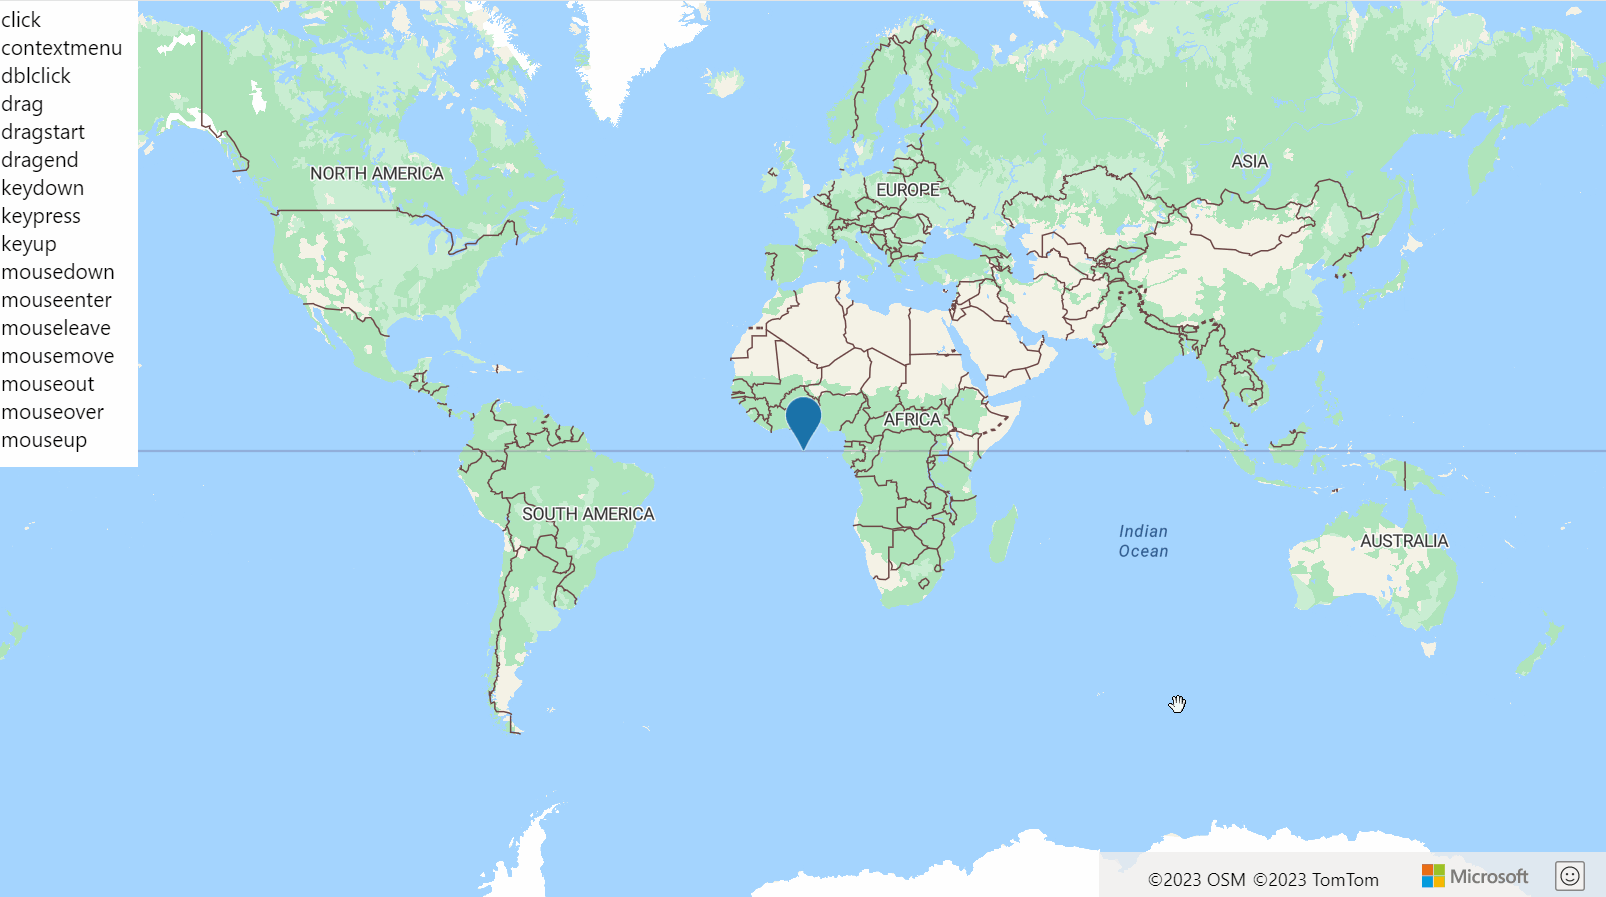 Schermopname van een kaart van de wereld met een HtmlMarker en een lijst met HtmlMarker-gebeurtenissen die groen worden gemarkeerd wanneer die gebeurtenis wordt geactiveerd.